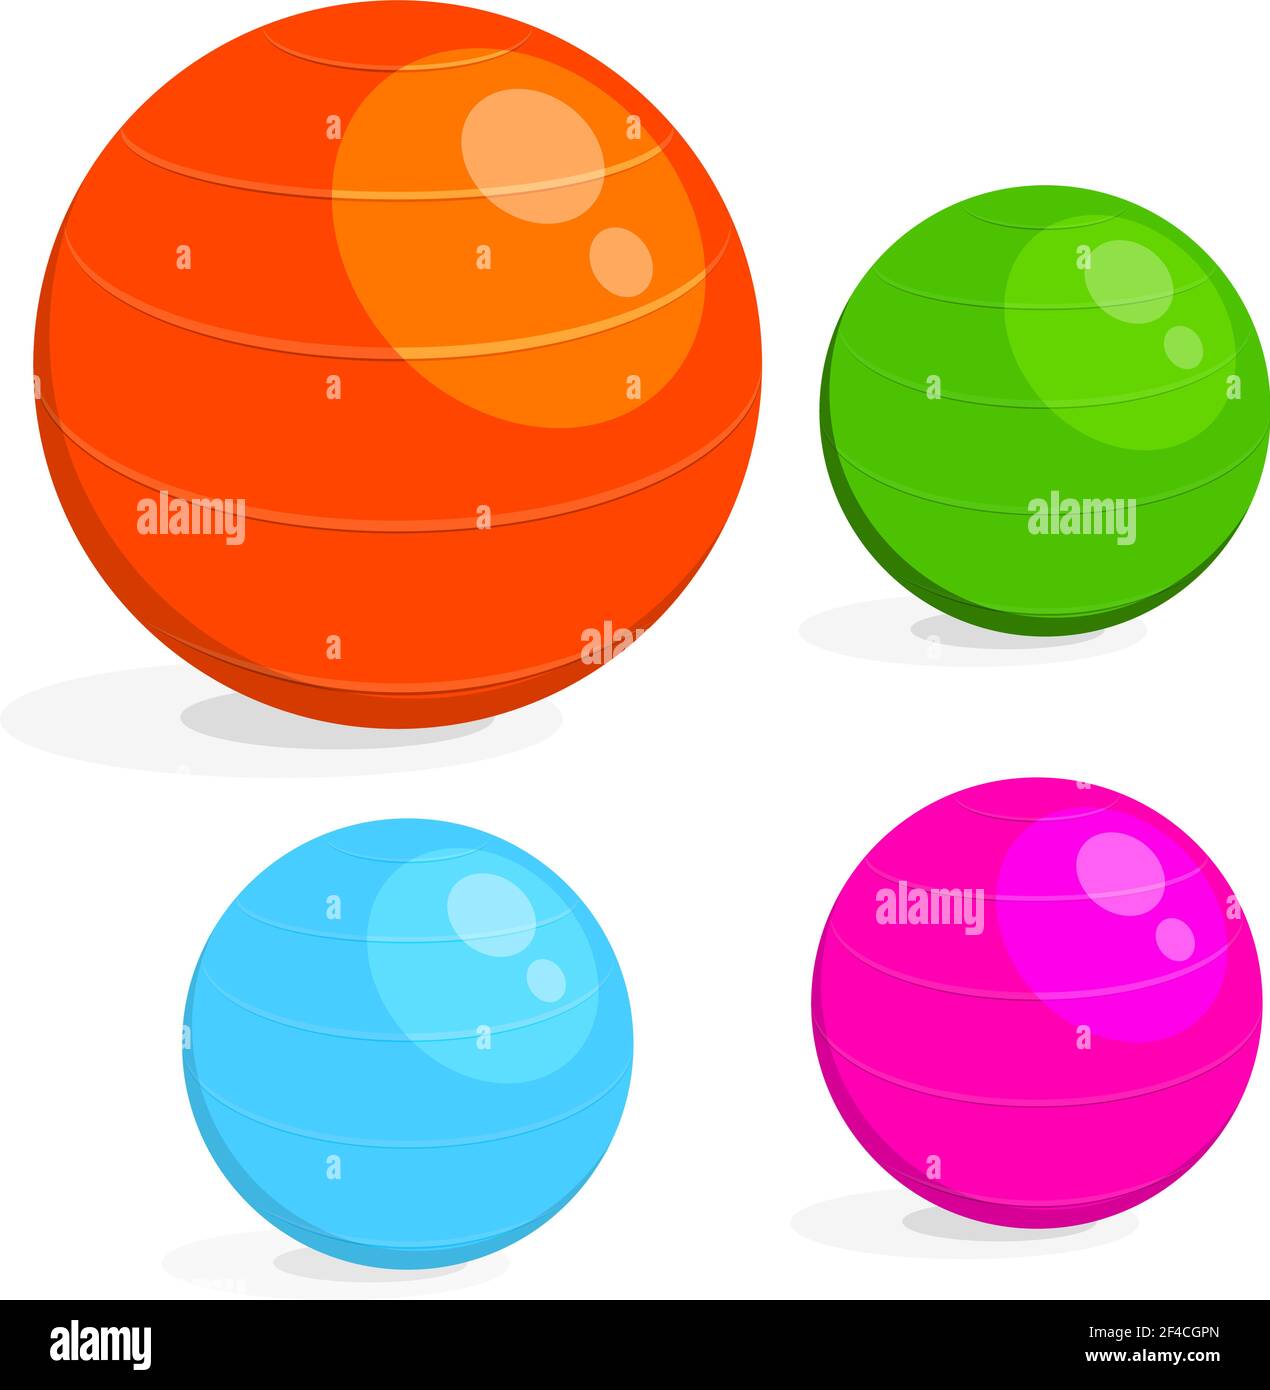 Cartoon-Bild Satz des Balls für Fitness. Bunte Zeichnung von Sportausrüstung Fitball auf weißem Hintergrund. Vektorgrafik Stock Vektor